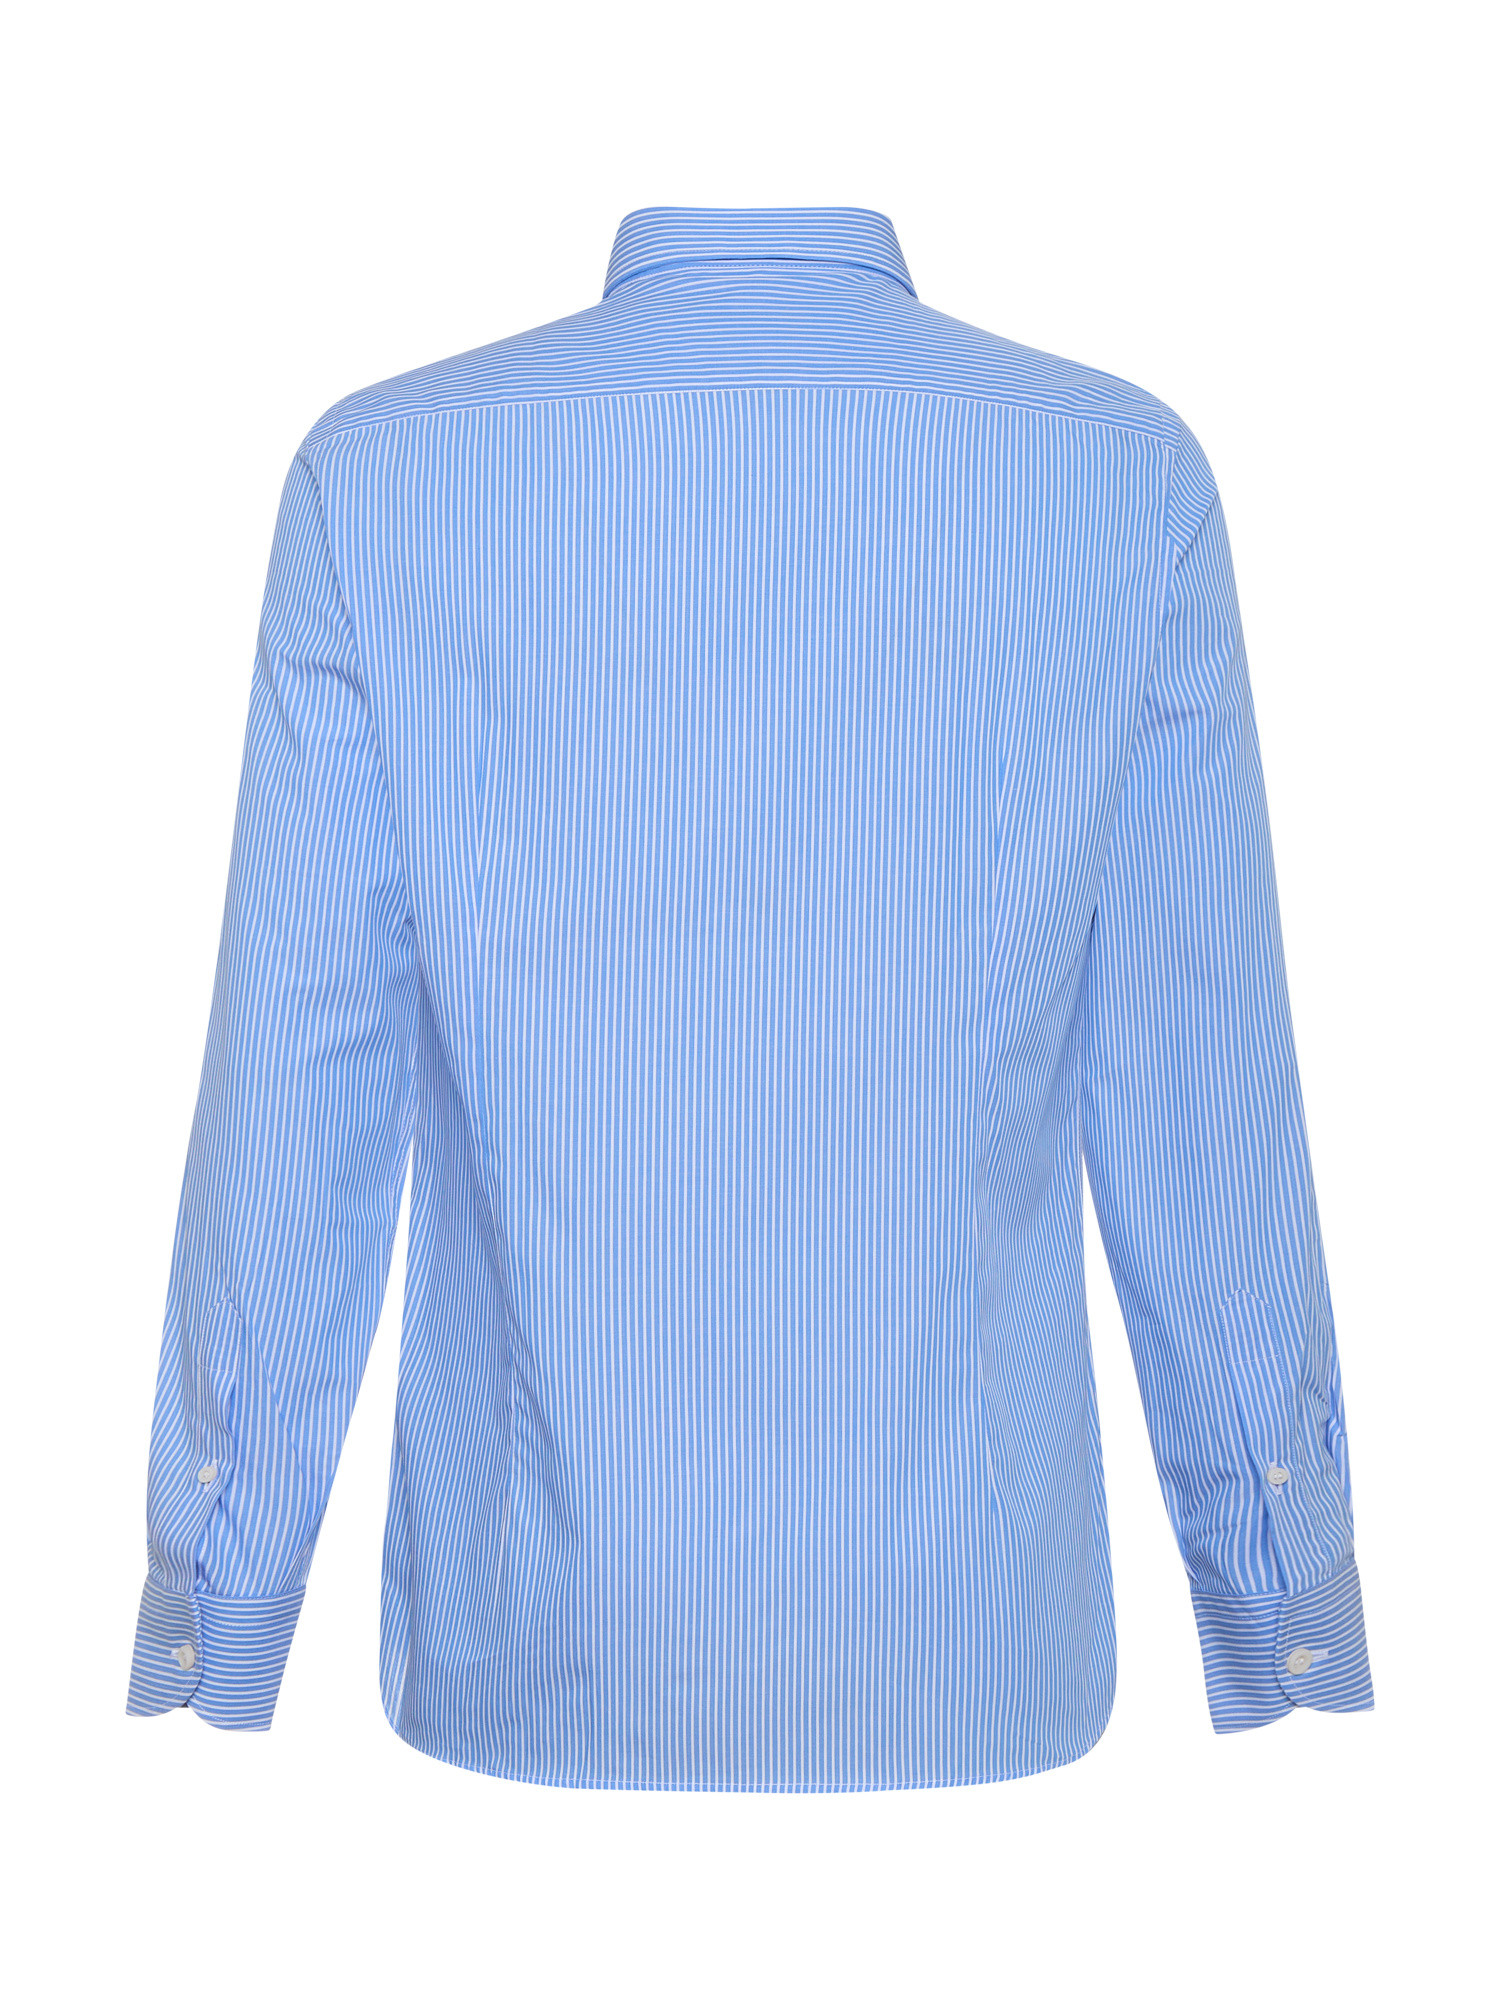 Luca D'Altieri - Camicia casual slim fit in popeline di puro cotone, Azzurro chiaro, large image number 2